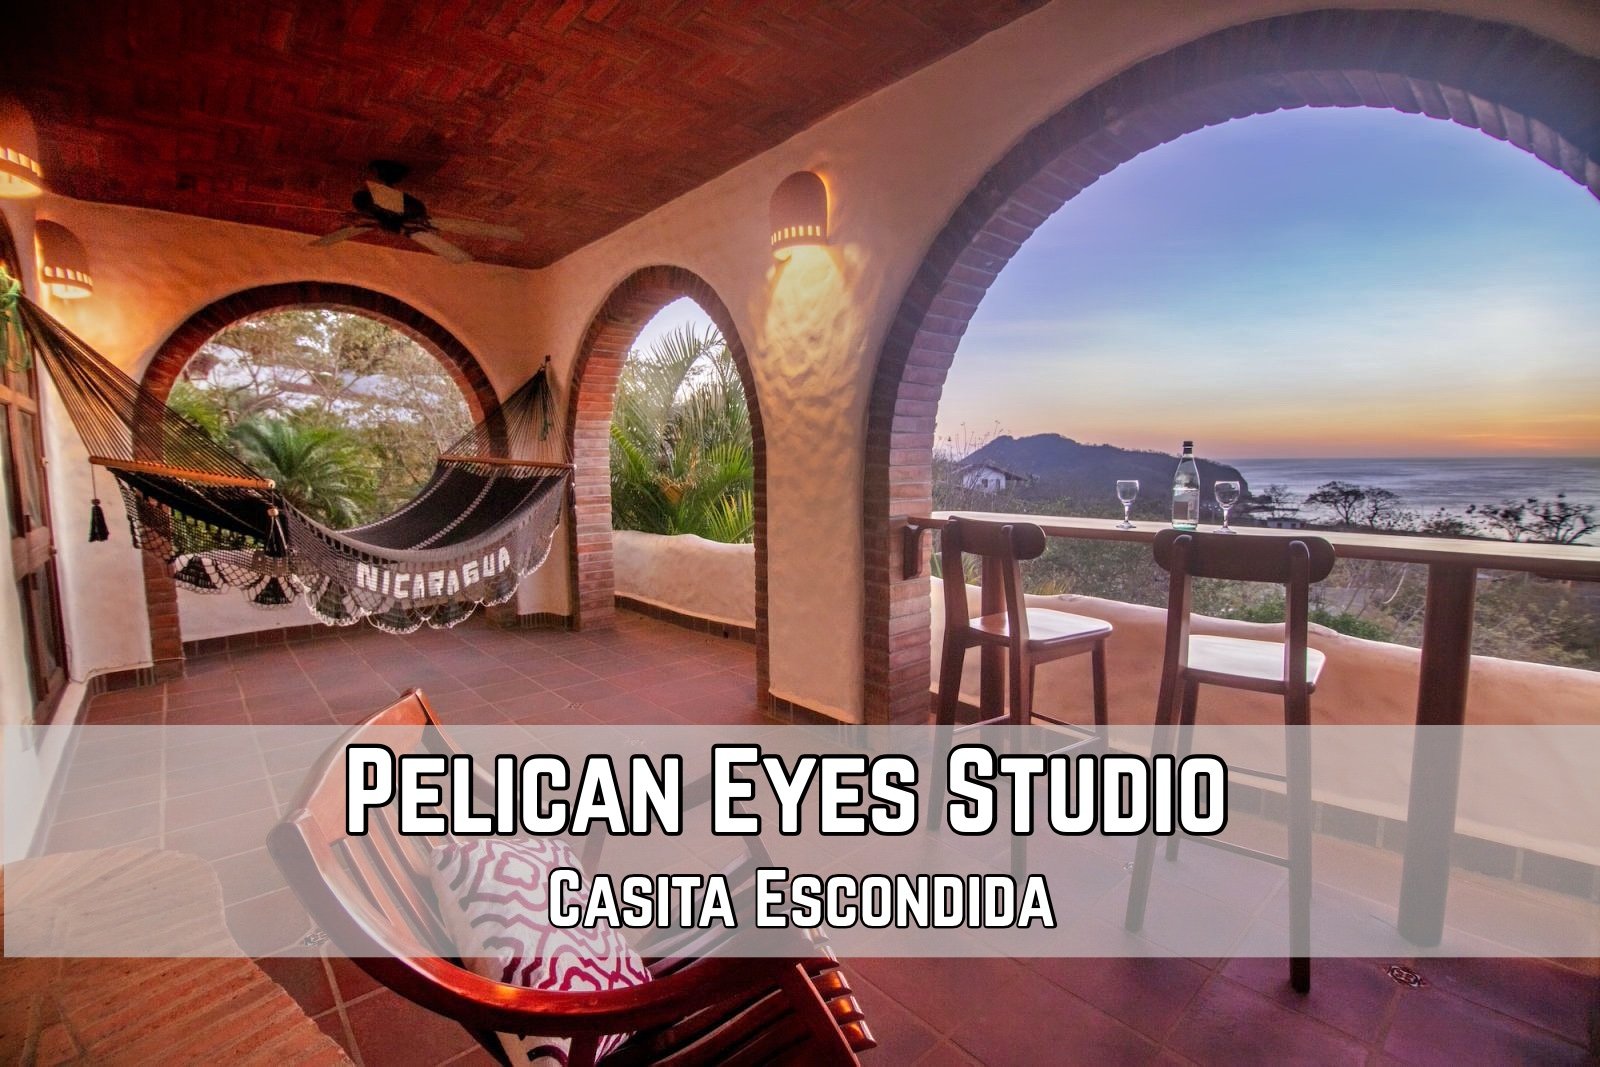 Pelican Eyes Property for Sale Condo San Juan Del Sur Nicaragua 1.jpg